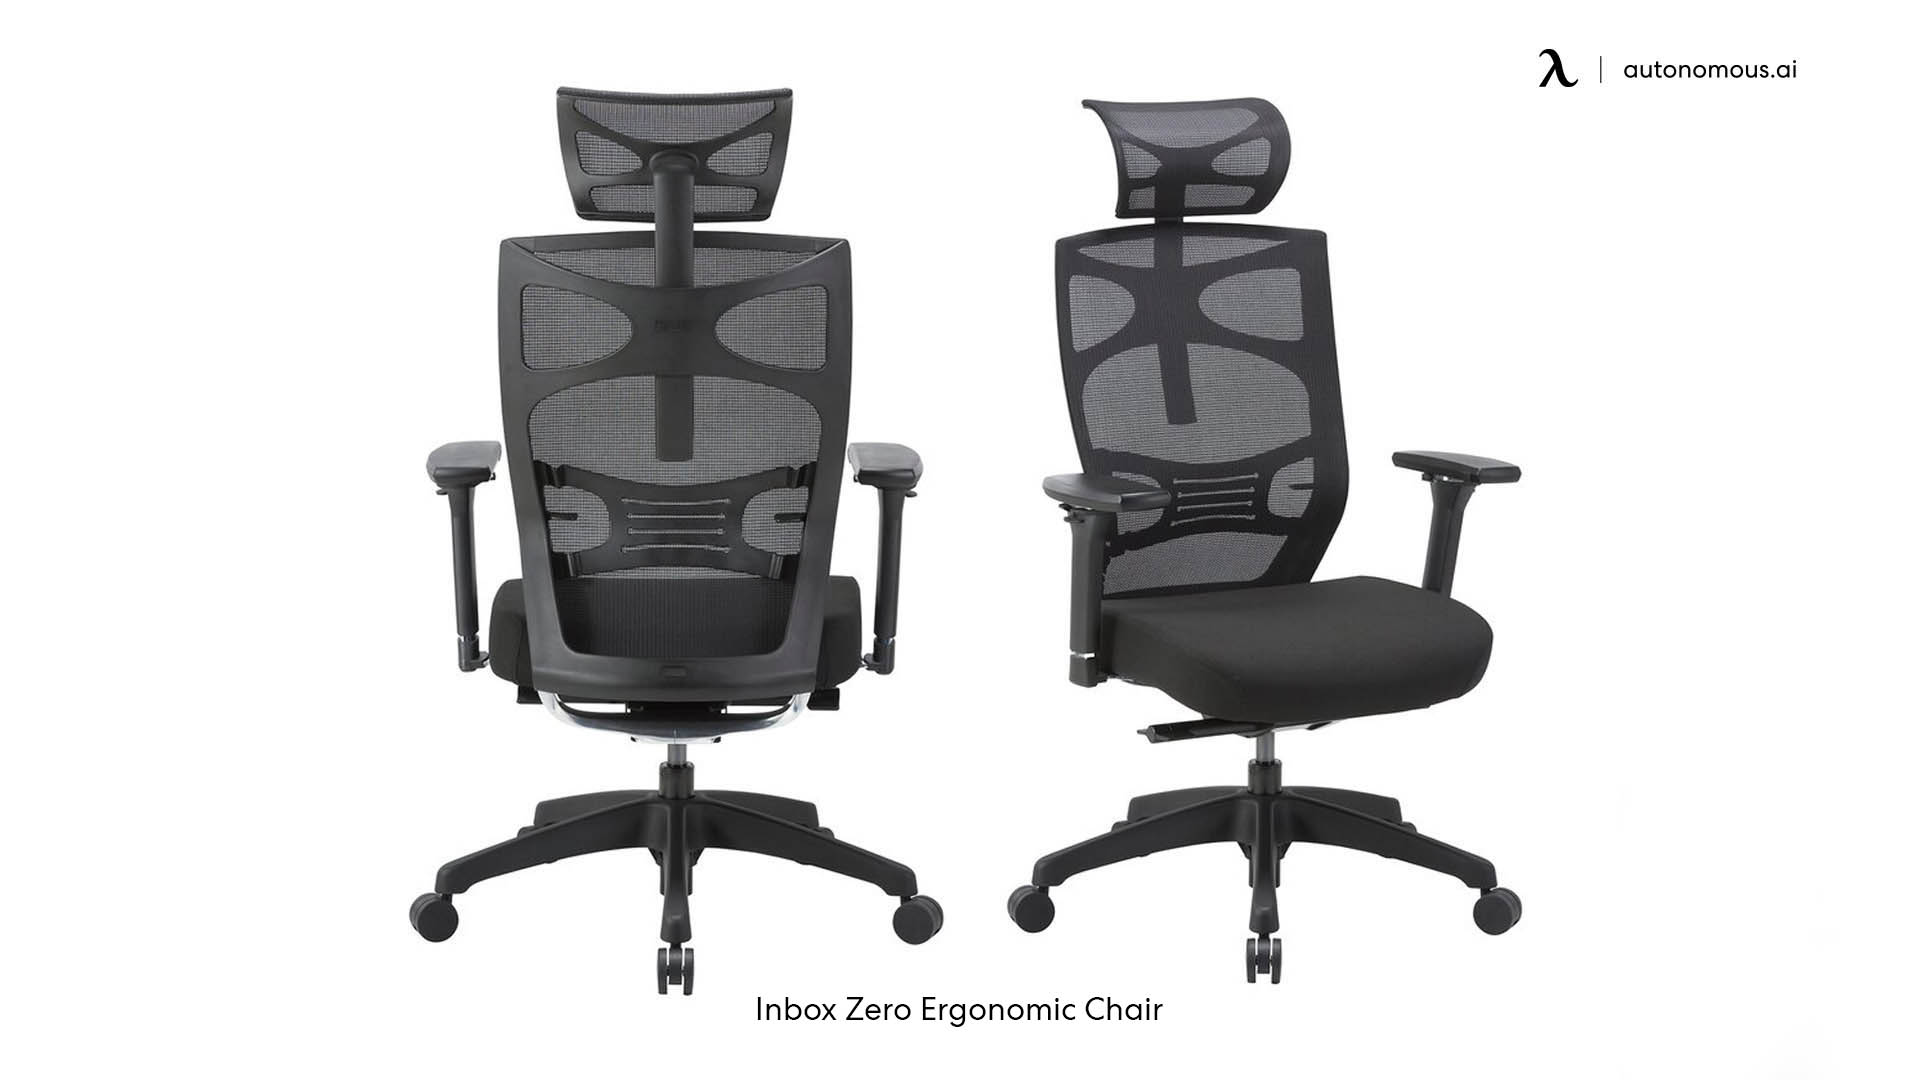 Inbox Zero Ergonomic Chair